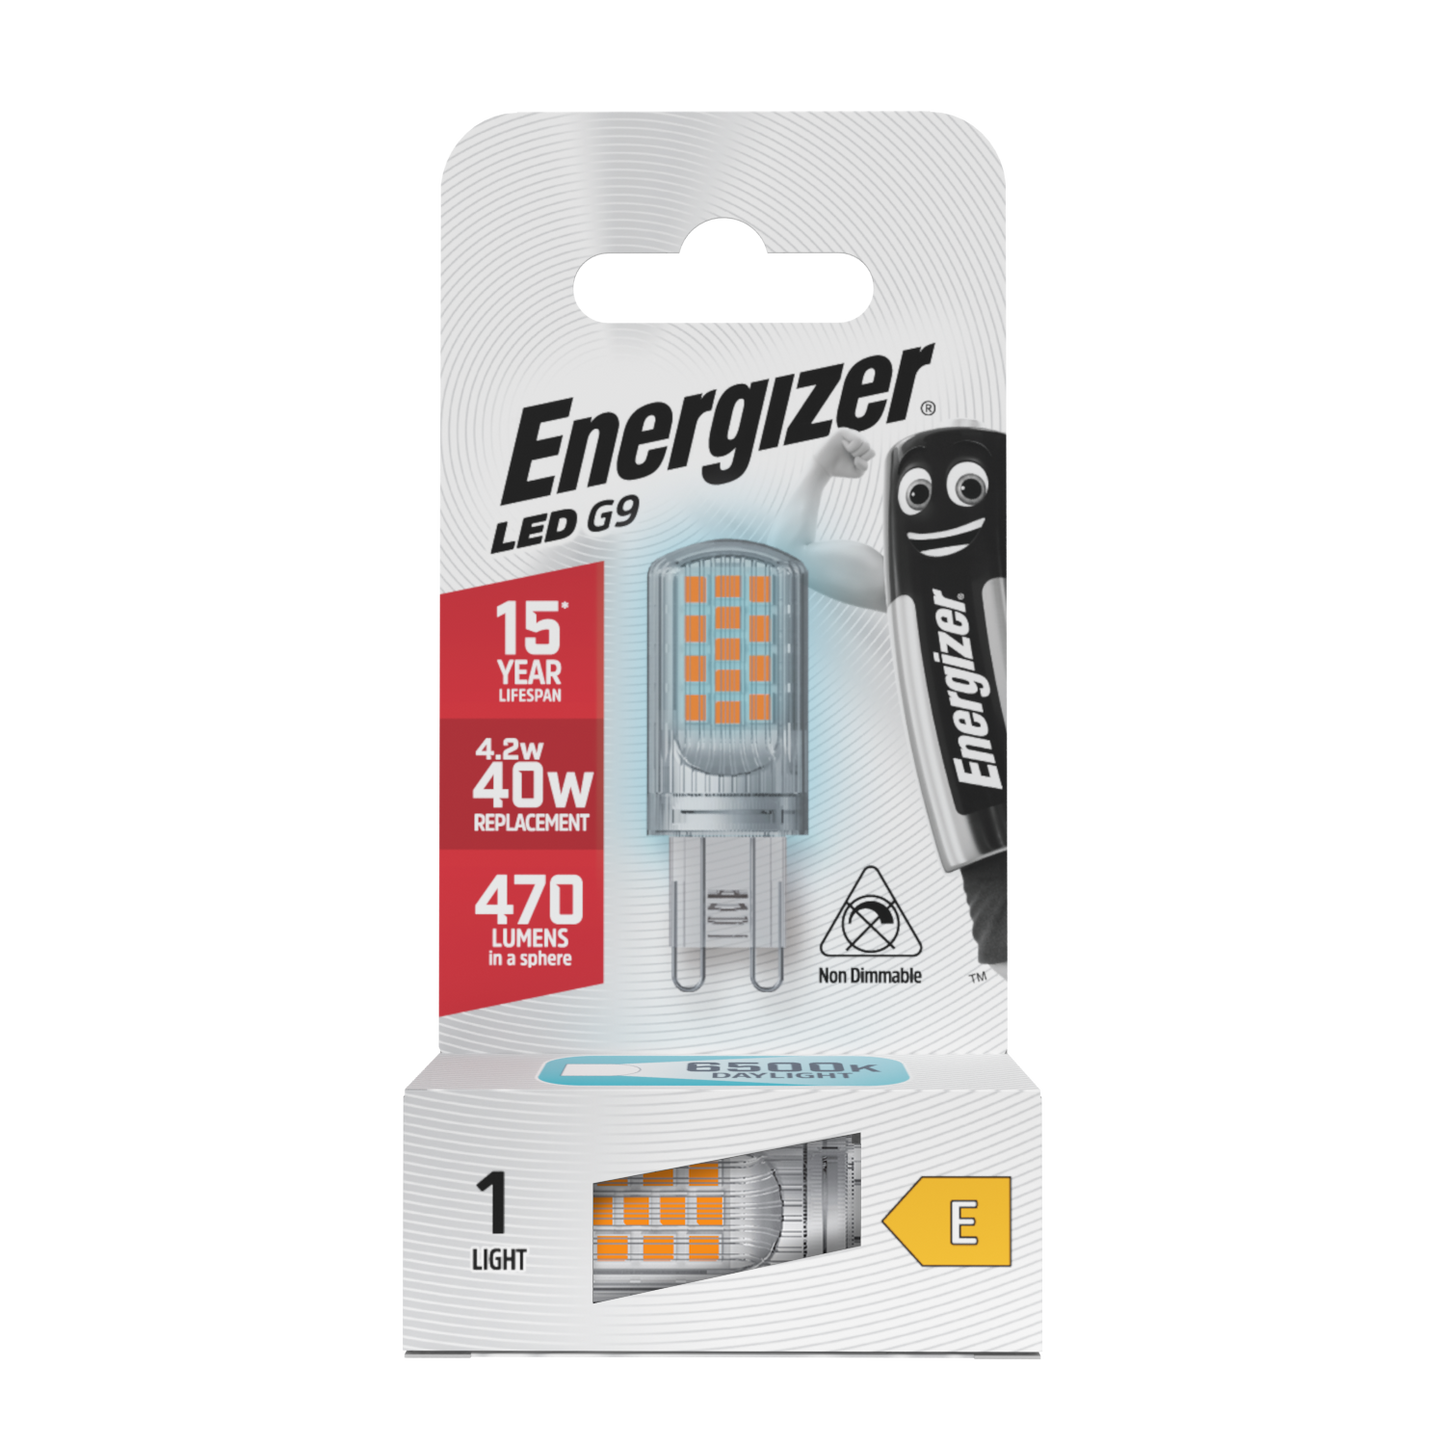 Energizer LED G9 470lm 4.2W 6,500K (Daylight), Box of 1